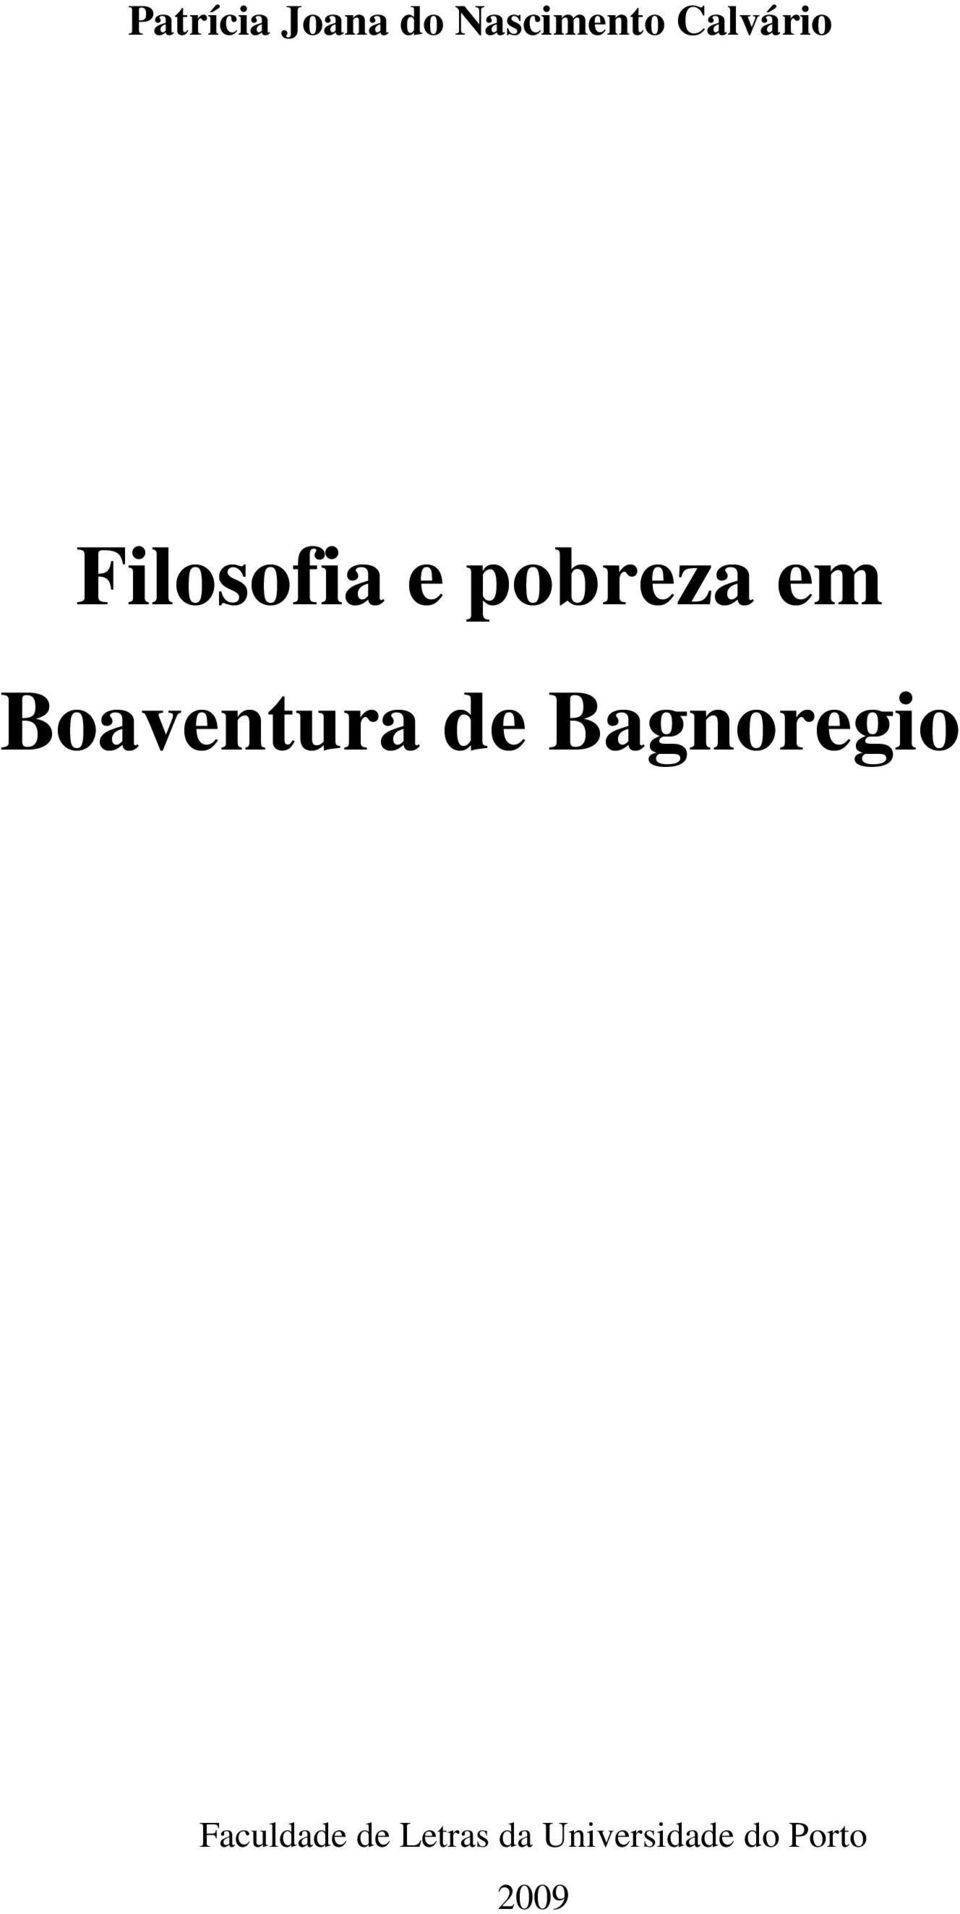 Boaventura de Bagnoregio